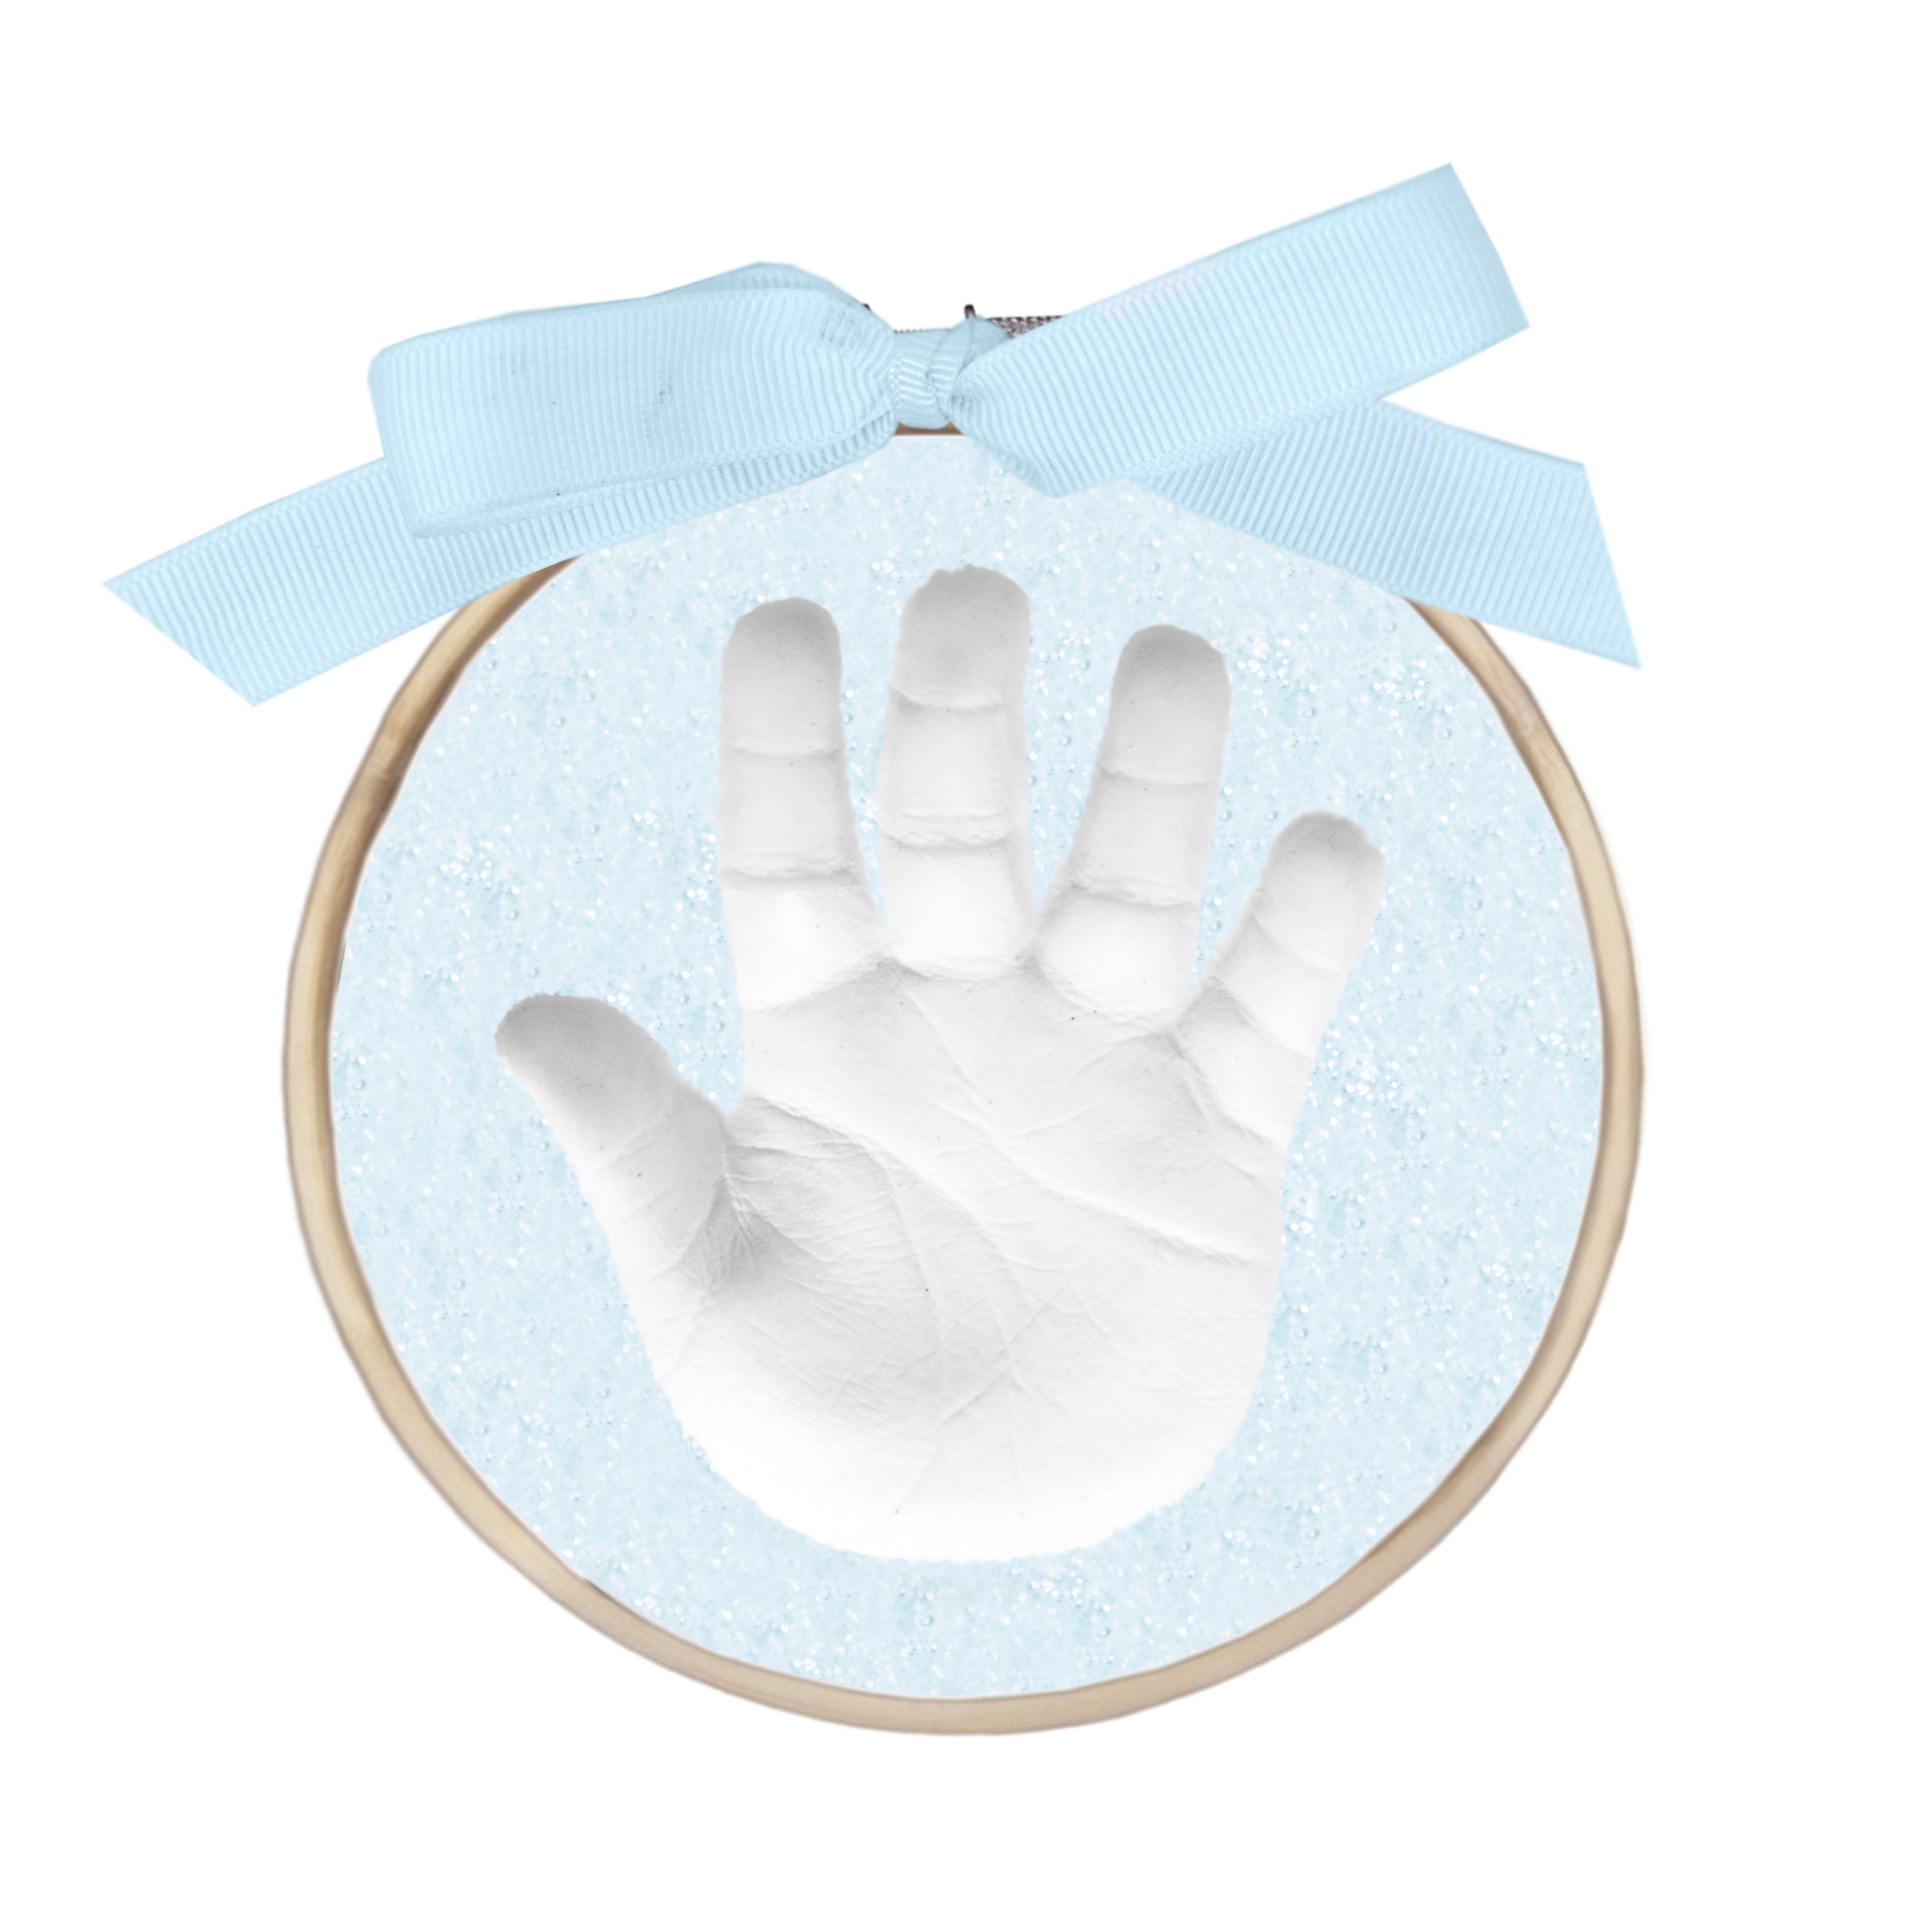 Sugarprints Glitter Handprint Kit Blue Child to Cherish 